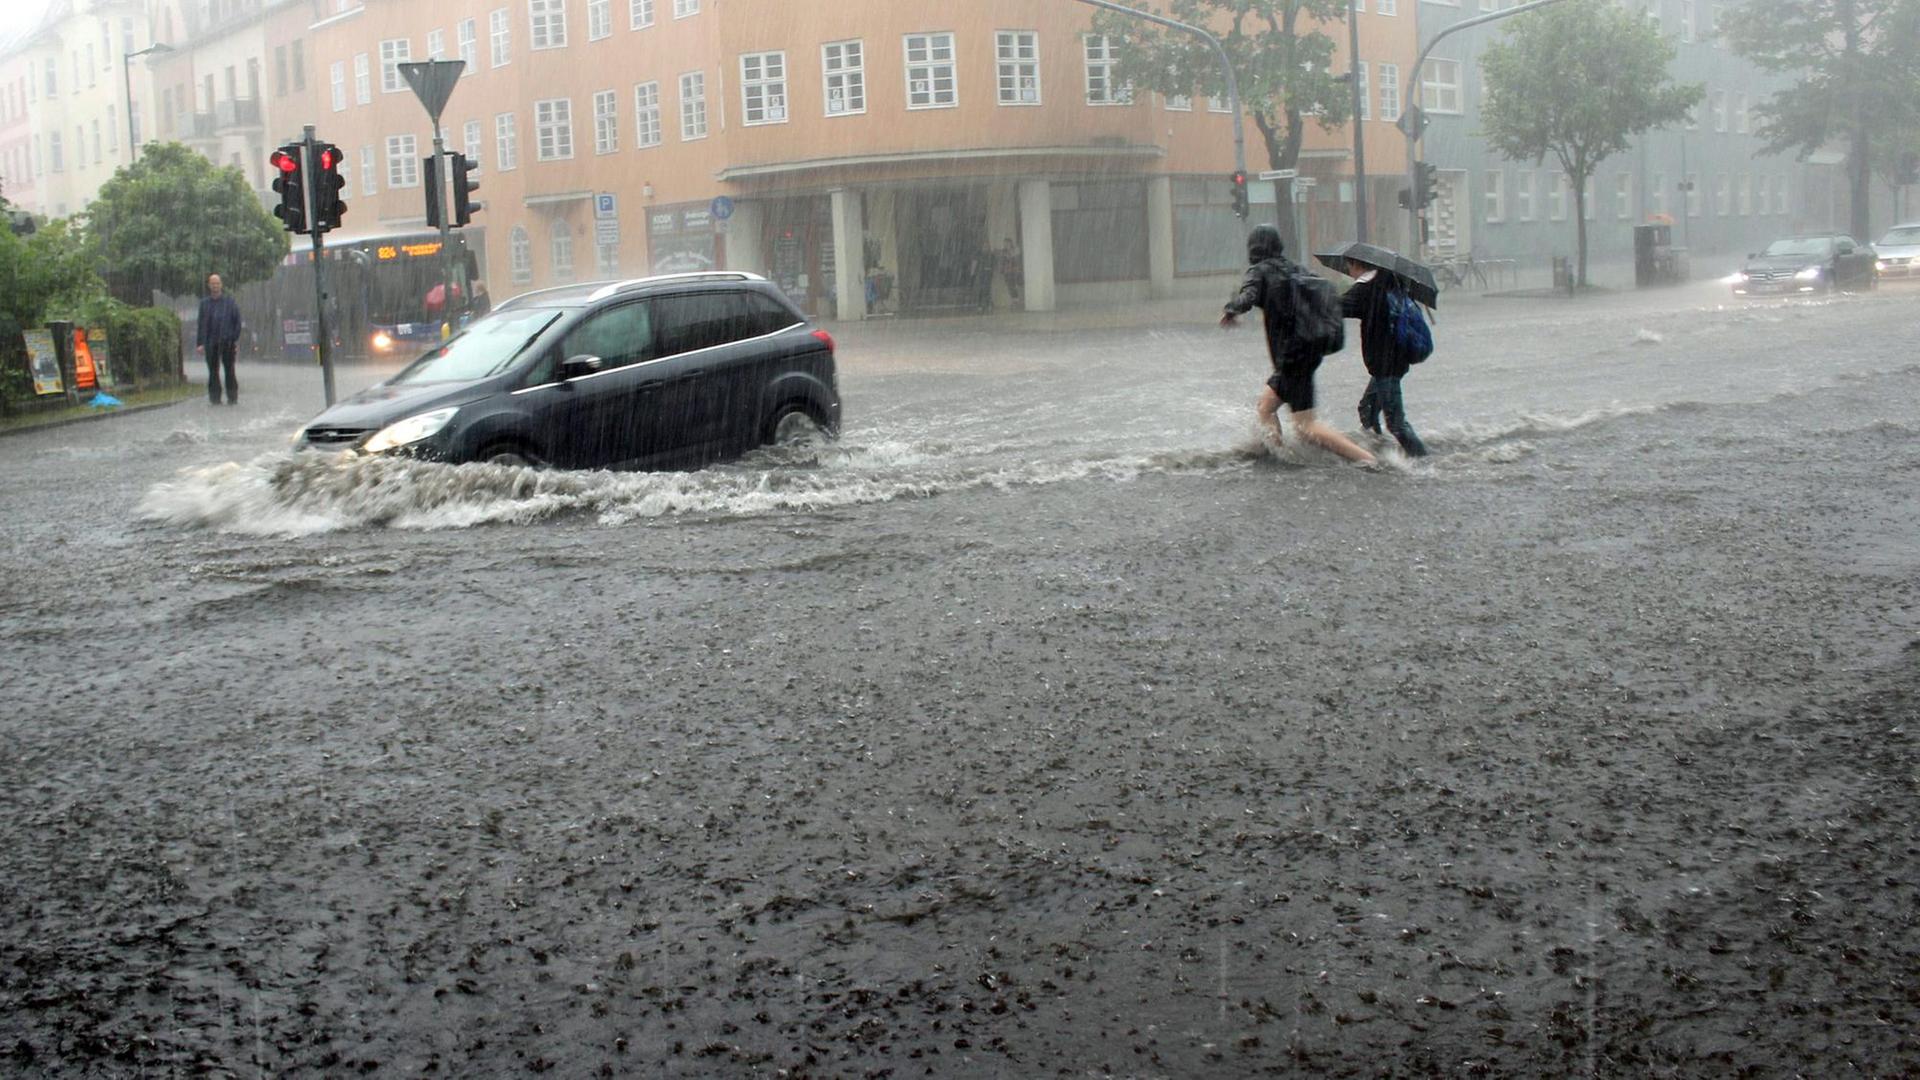 Eine überschwemmte Straße, auf der ein Auto fährt, dessen Reifen im Wasser versinken.